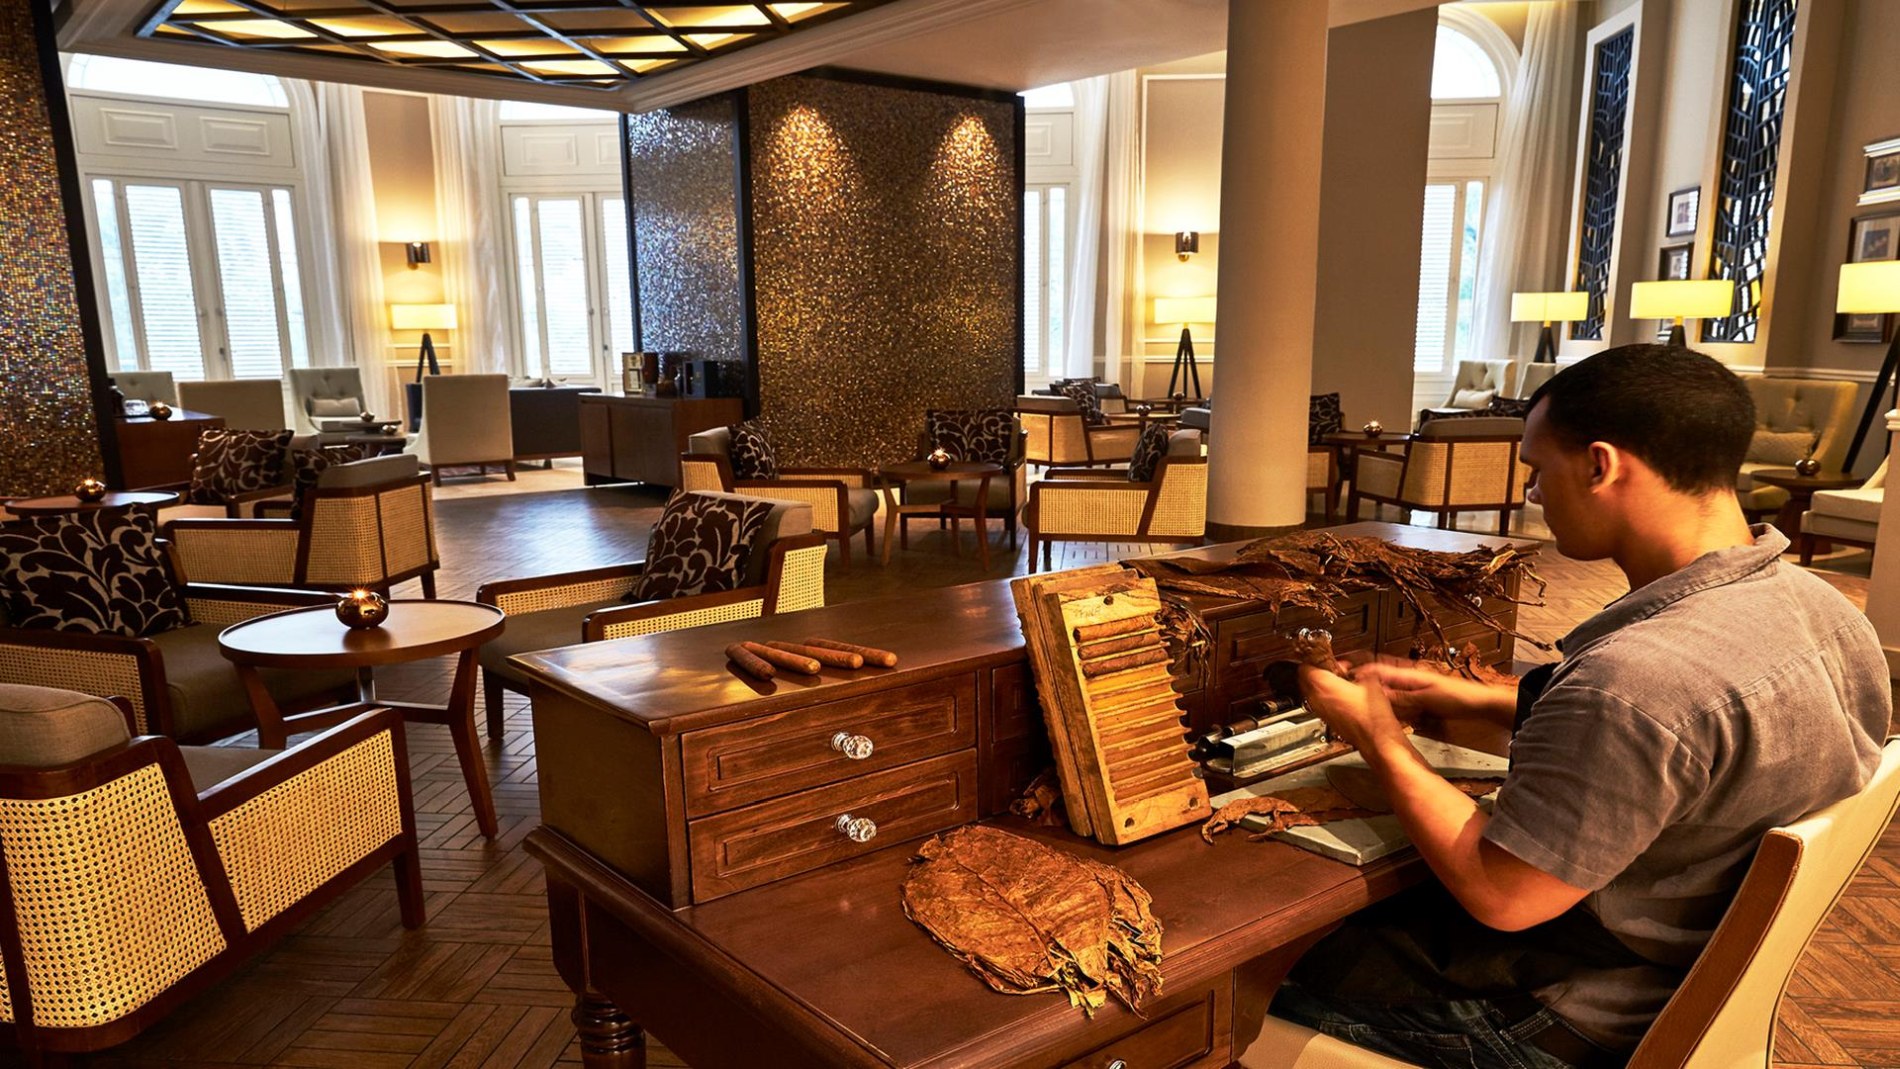 gemütliche zigarren lounge mit dunklen hölzern und beigen stoffen eingerichtet mit dem cigar desk im vordergrund an dem ein kubaner handgefertigte zigarren herstellt